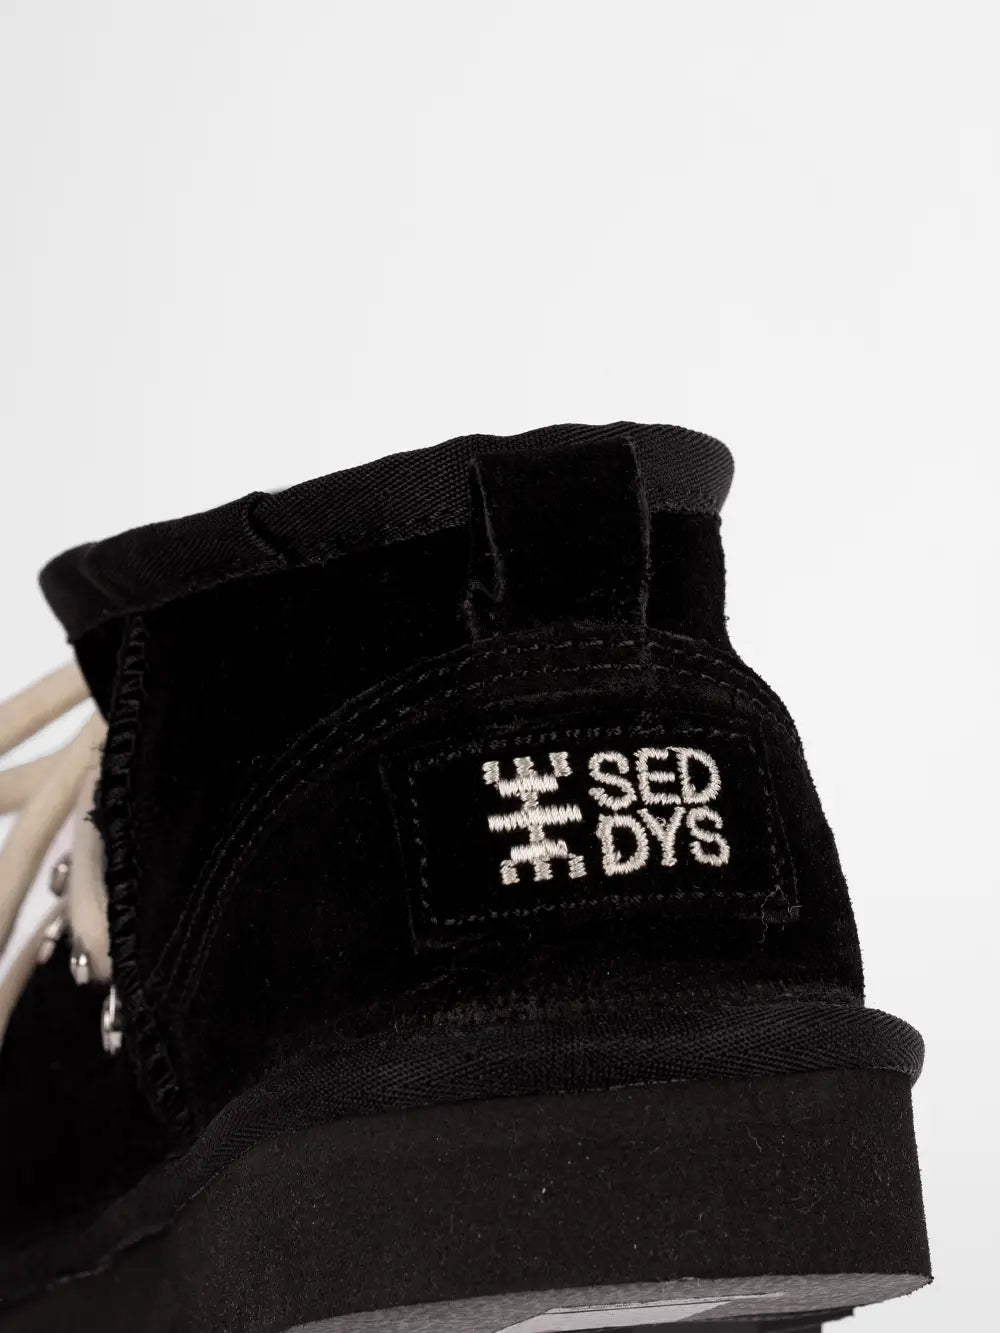 Stivaletto basso nero, imbottito, con lacci tubolari in diversi colori, logo SEDDYS cucito sul tallone